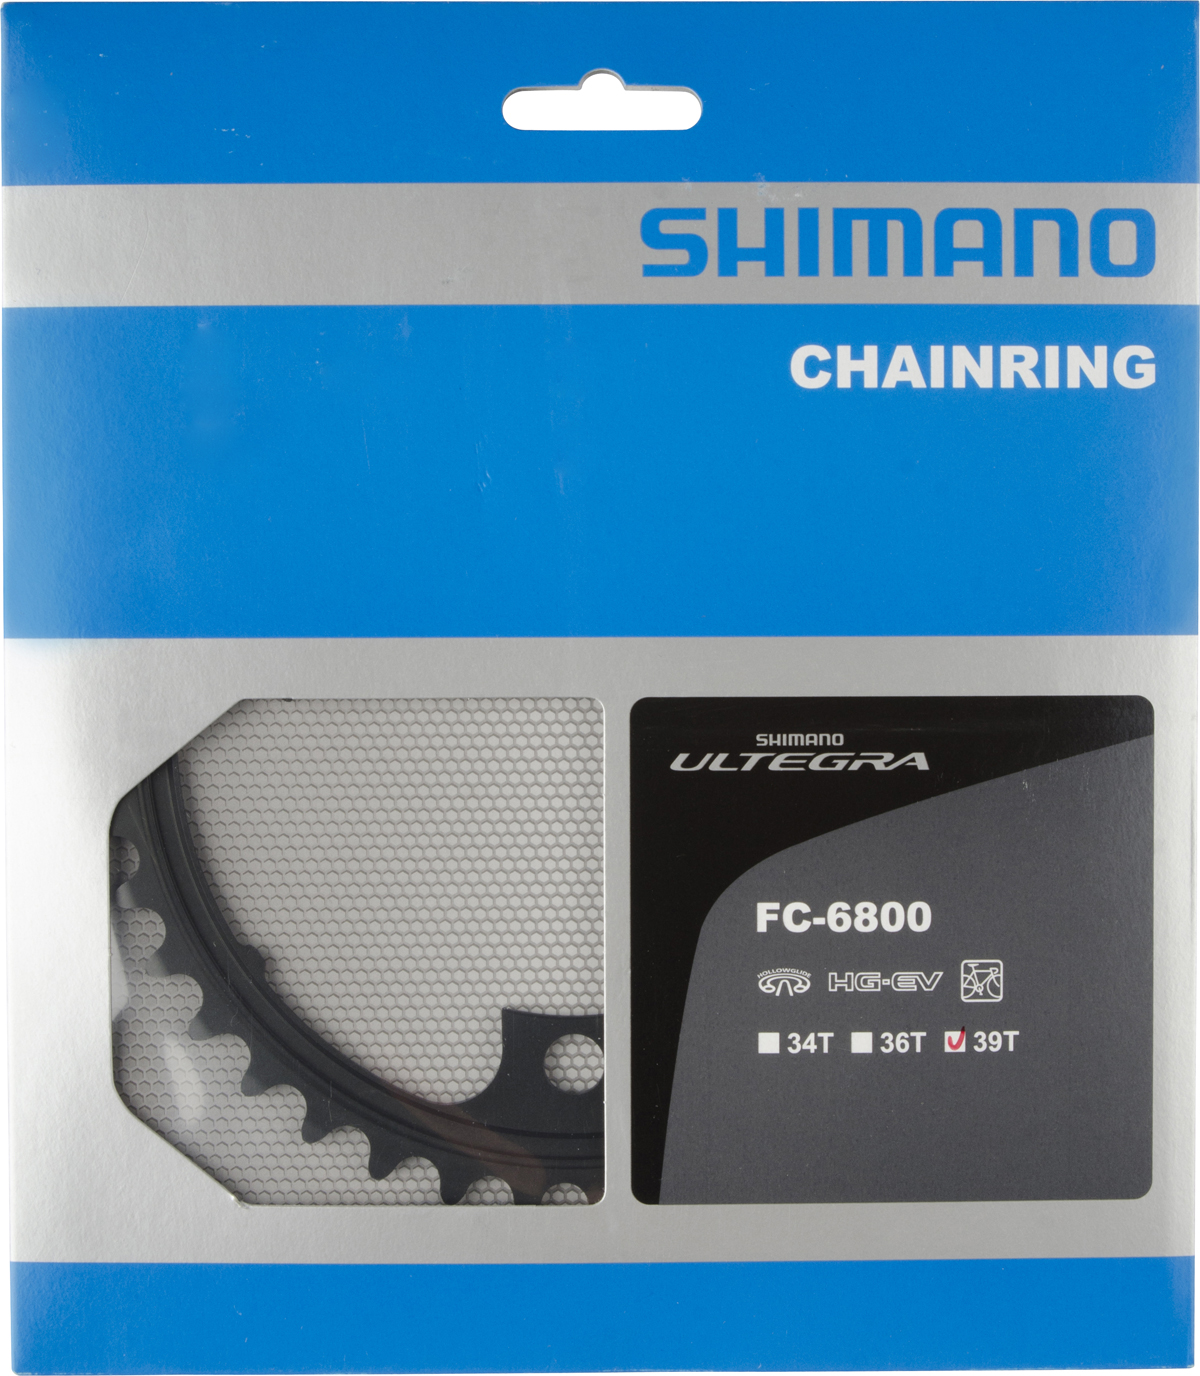 SHIMANO převodník ULTEGRA FC-6800 39 z 11 spd dvojpřevodník MD pro 53-39 z